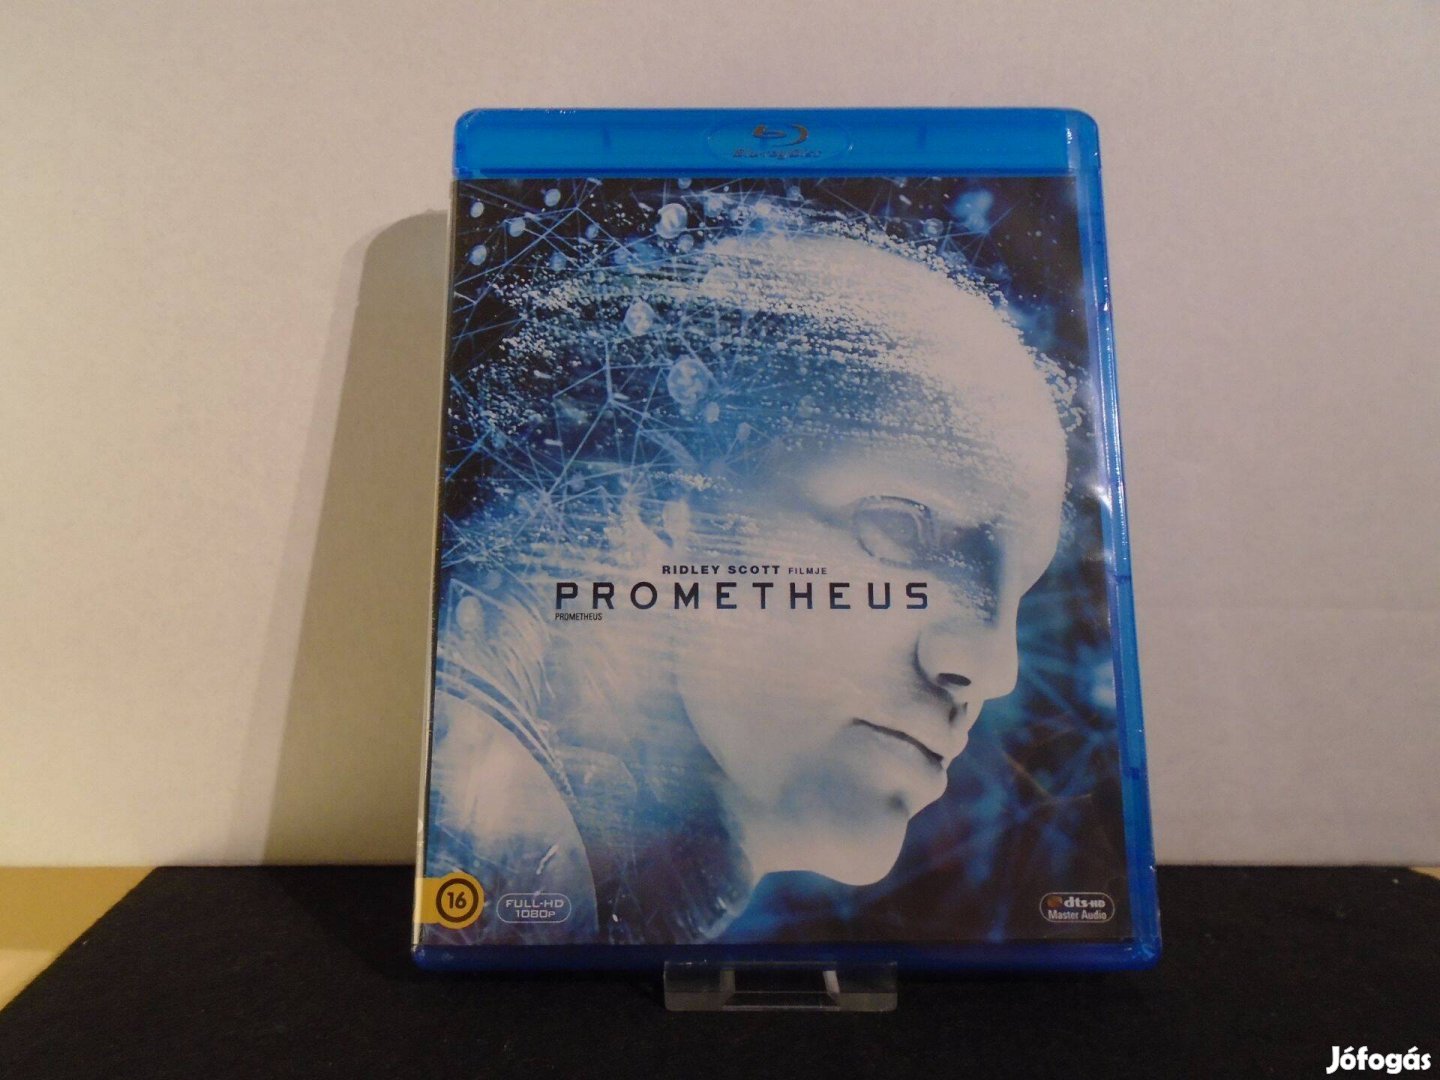 Prometheus 3D/2D 2012 Blu-ray / bluray (hazai kiadás)